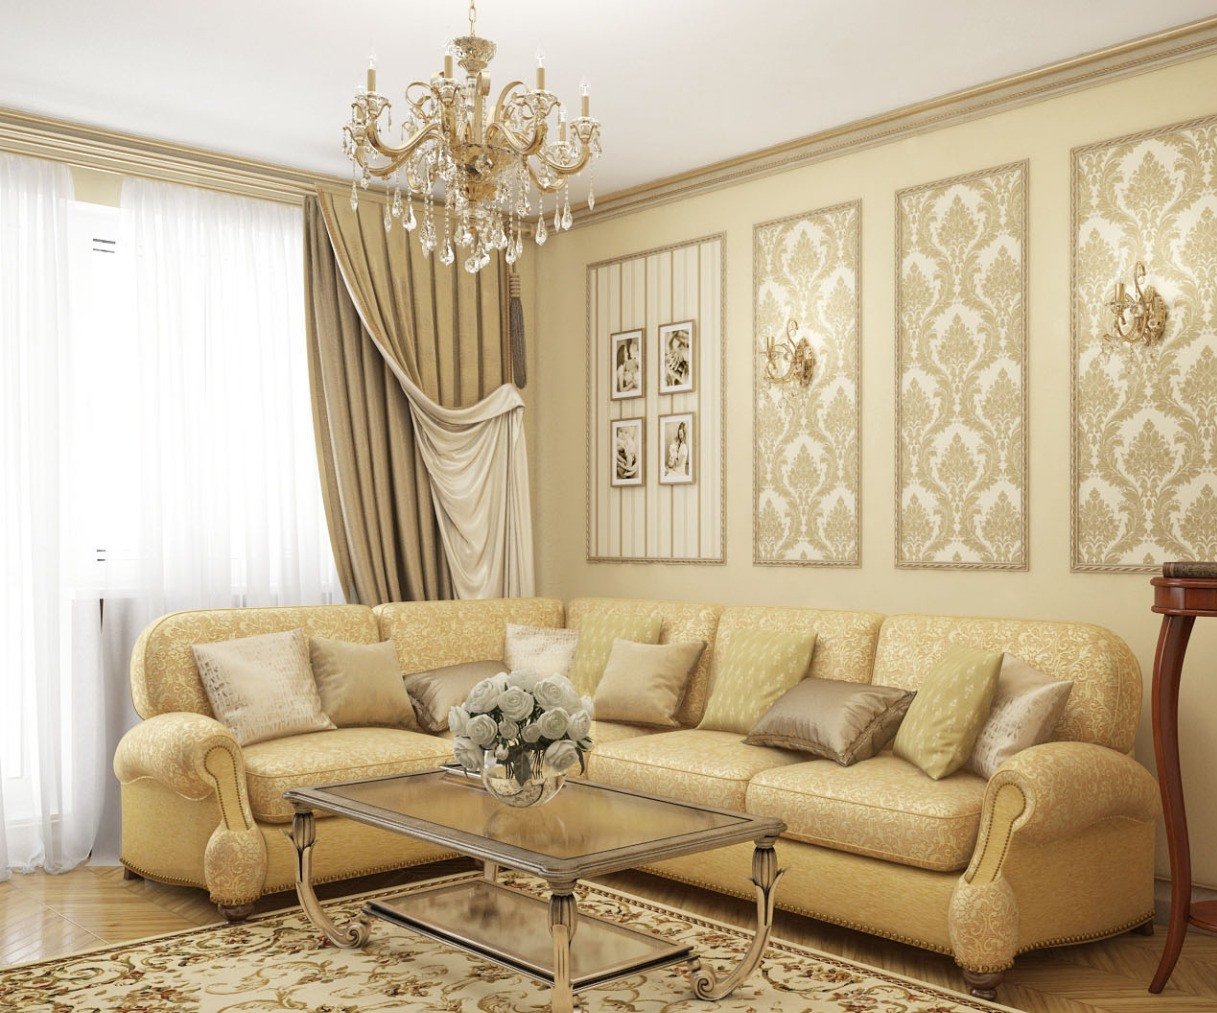 Tapeta v obývacím pokoji: nejlepší kombinace barev a stylu v interiéru místnosti, příklady fotografií